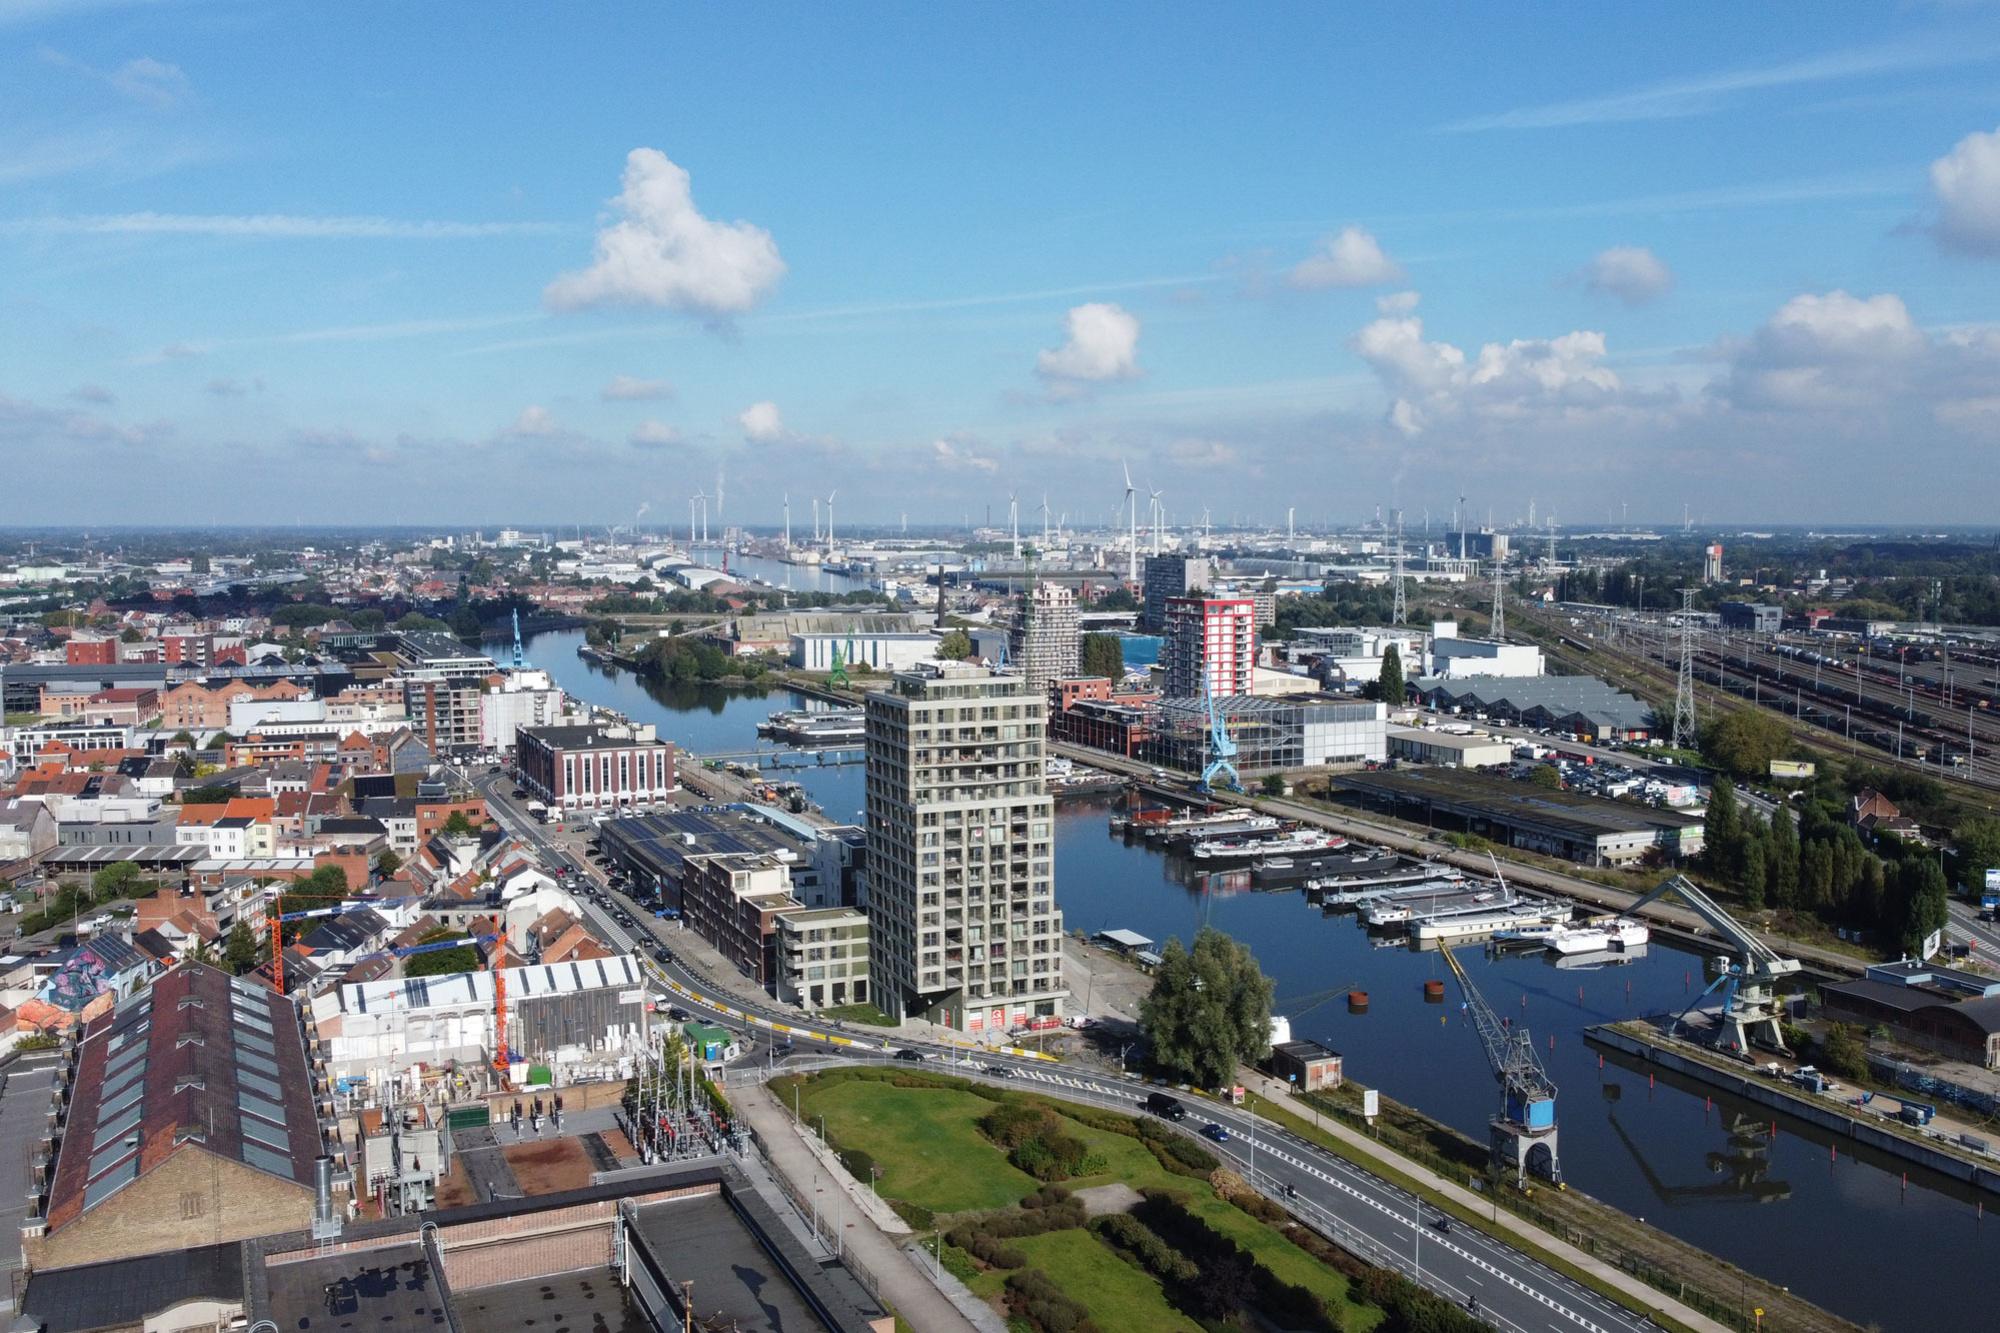 De Nieuwe Dokken is slechts een onderdeel van een veel groter stadsvernieuwingsproject dat verwarrend genoeg De Oude Dokken heet.